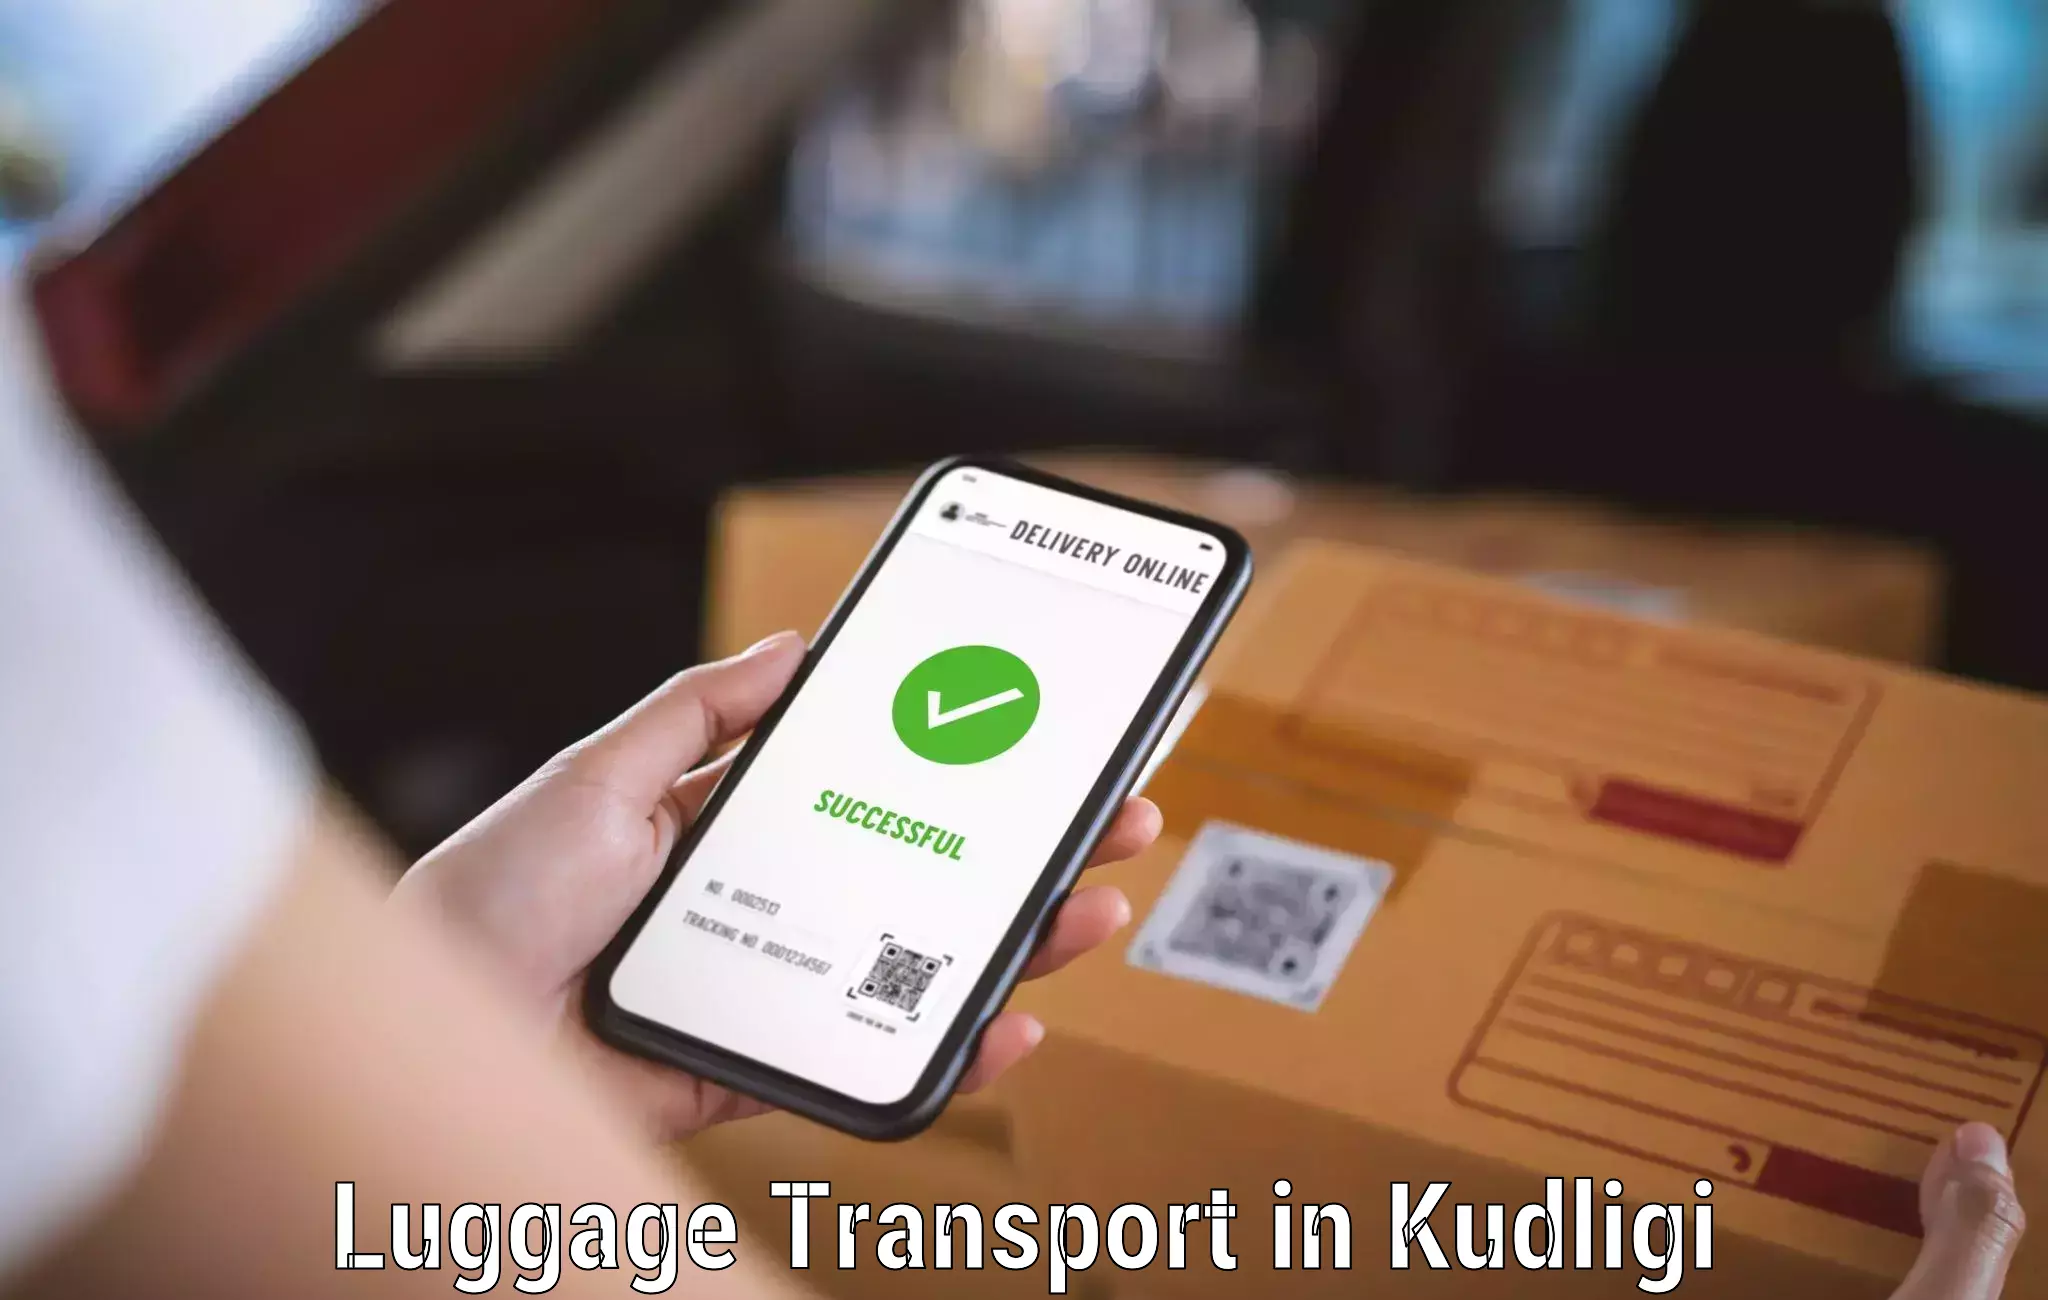 Luggage transport service in Kudligi